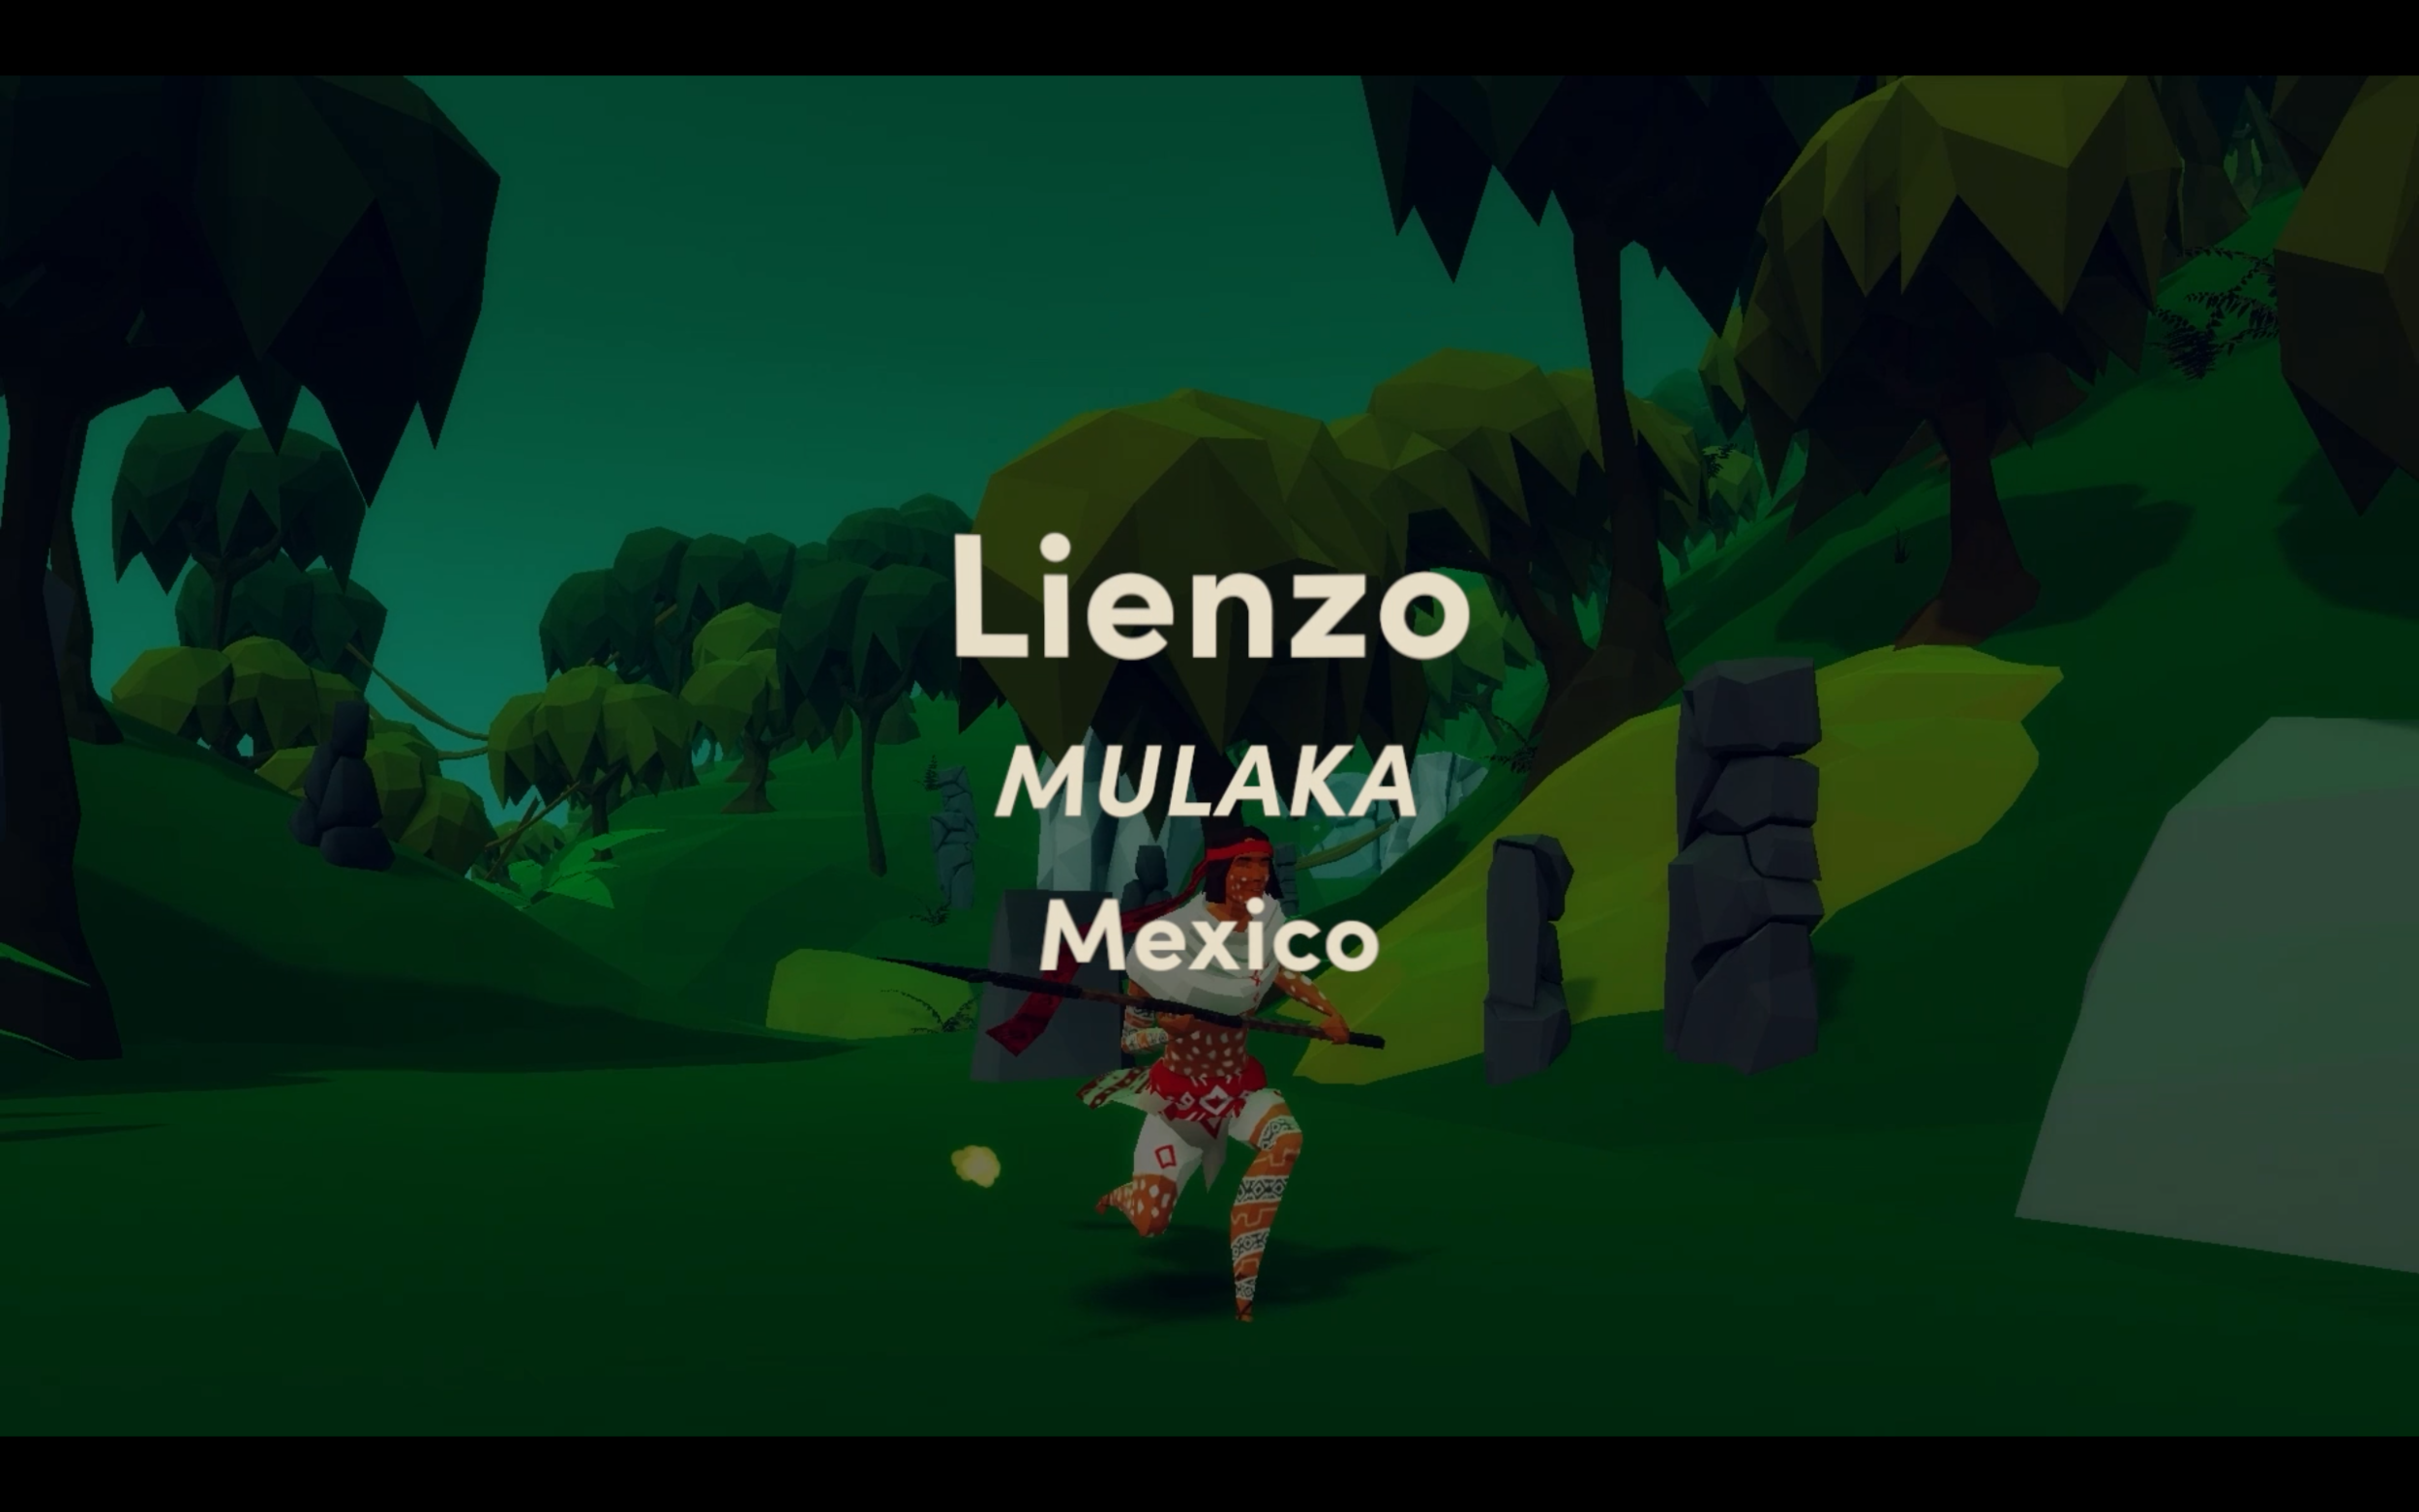 Lienzo Mulaka Mexico